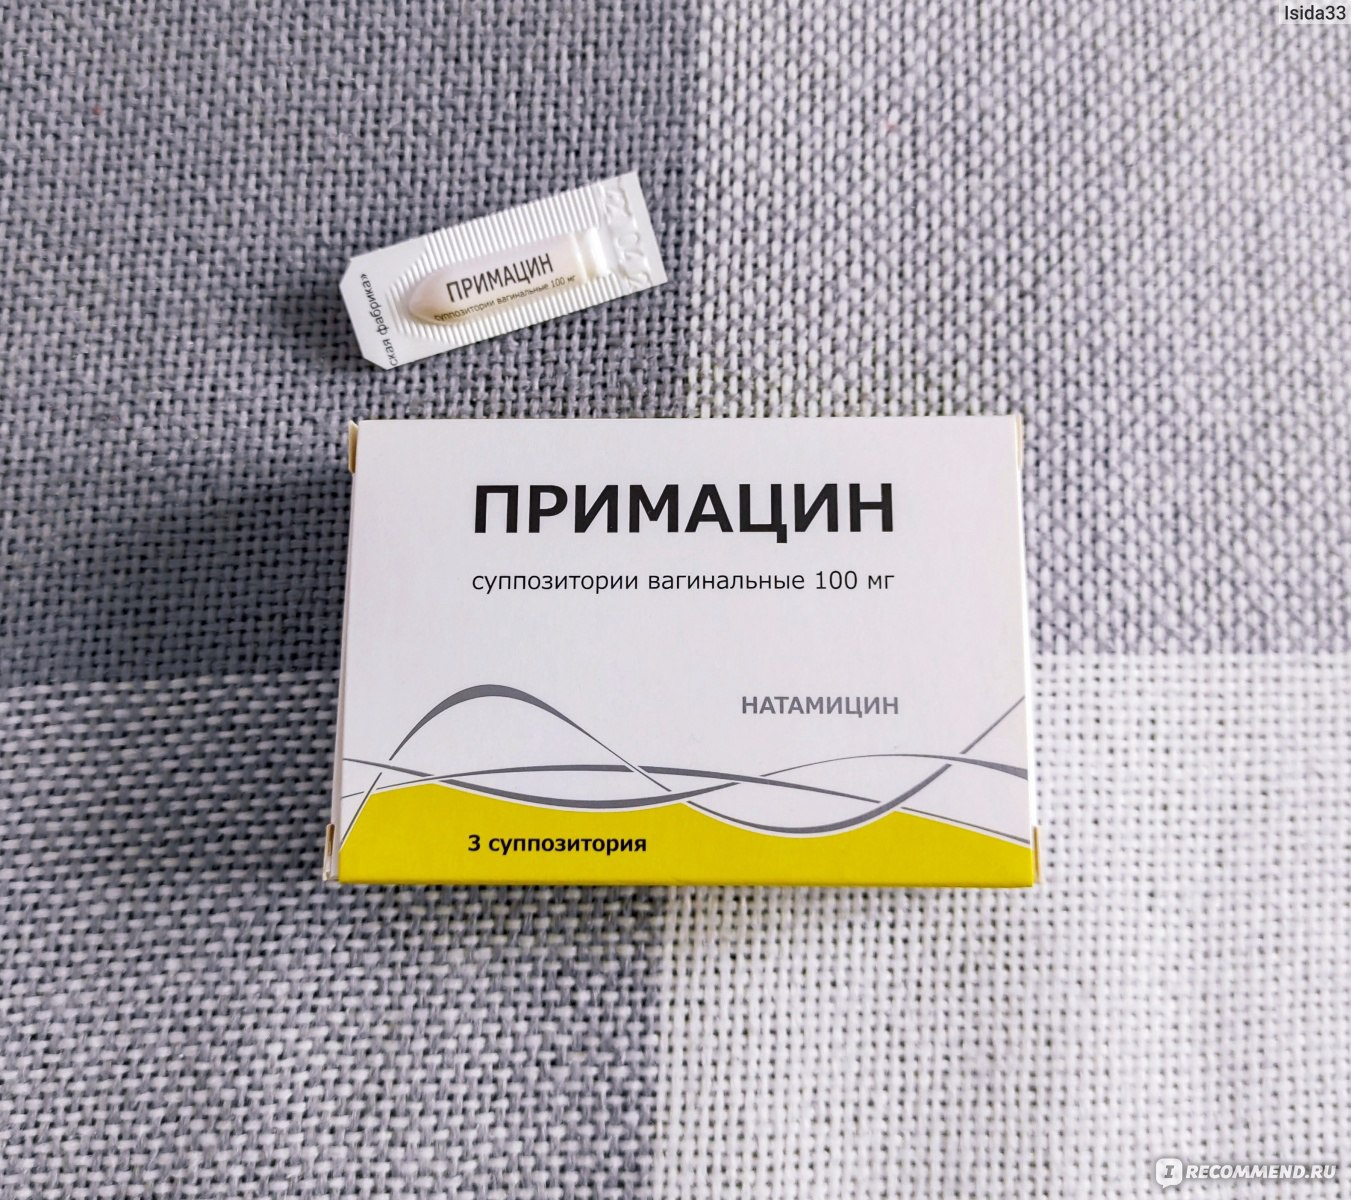 Суппозитории вагинальные Тульская фармацевтическая фабрика Примацин .